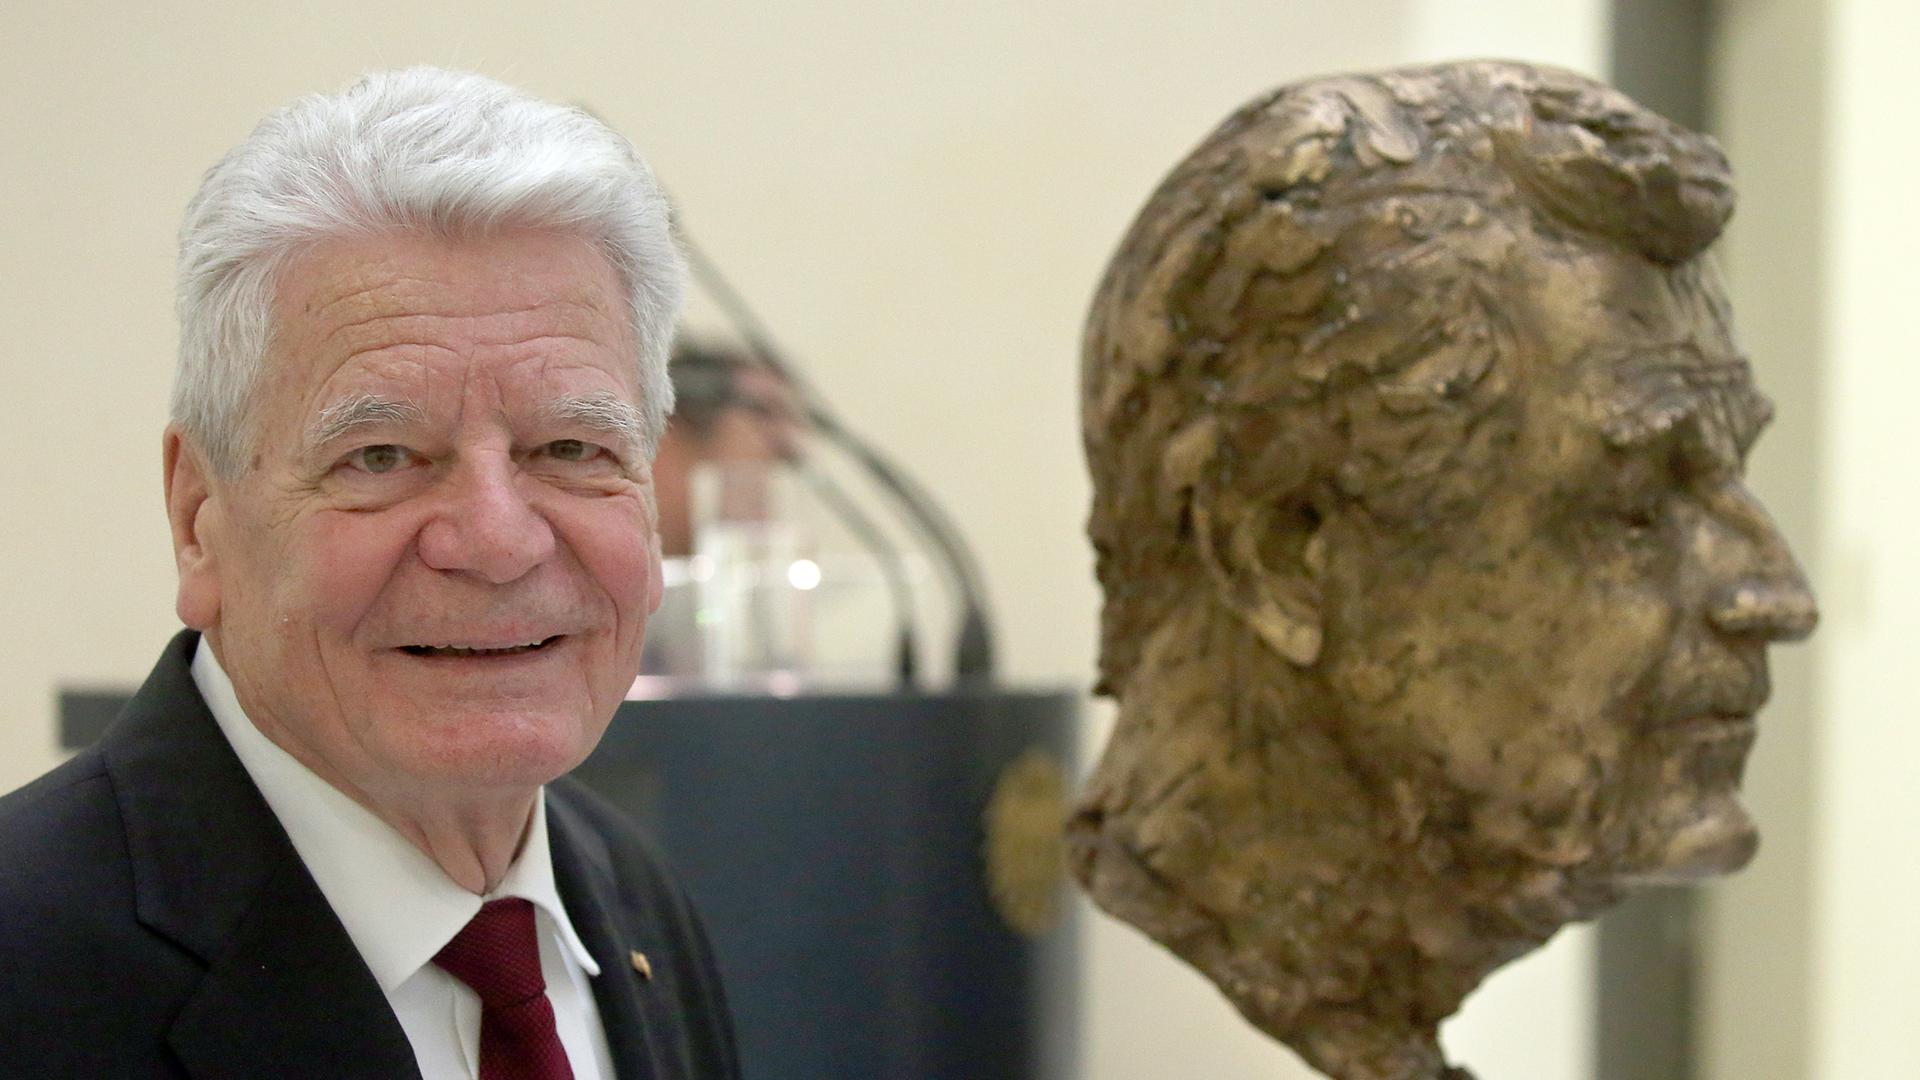 Büste für Ex-Bundespräsident - Steinmeier würdigt Gaucks Mut zur Kontroverse